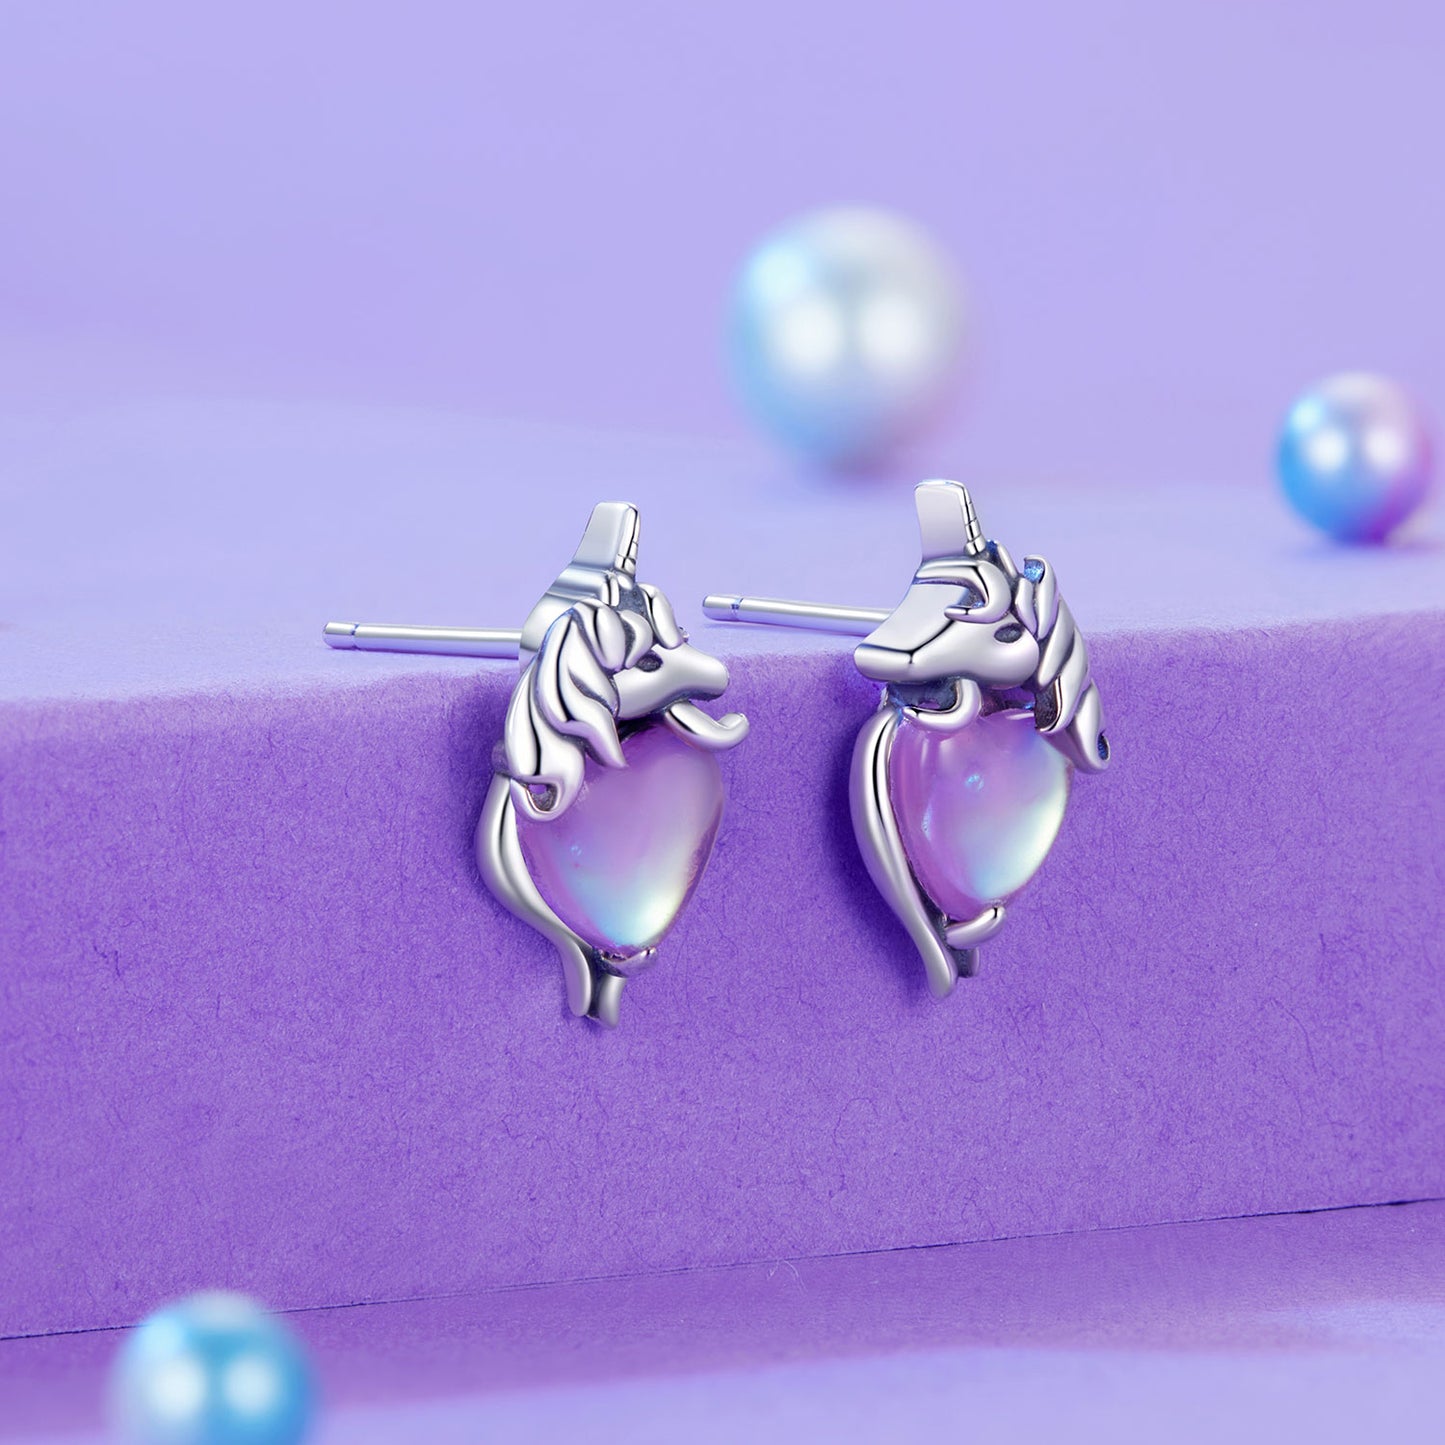 Unicorn earrings, 92.5% Sterling Silver, Glass ear stud